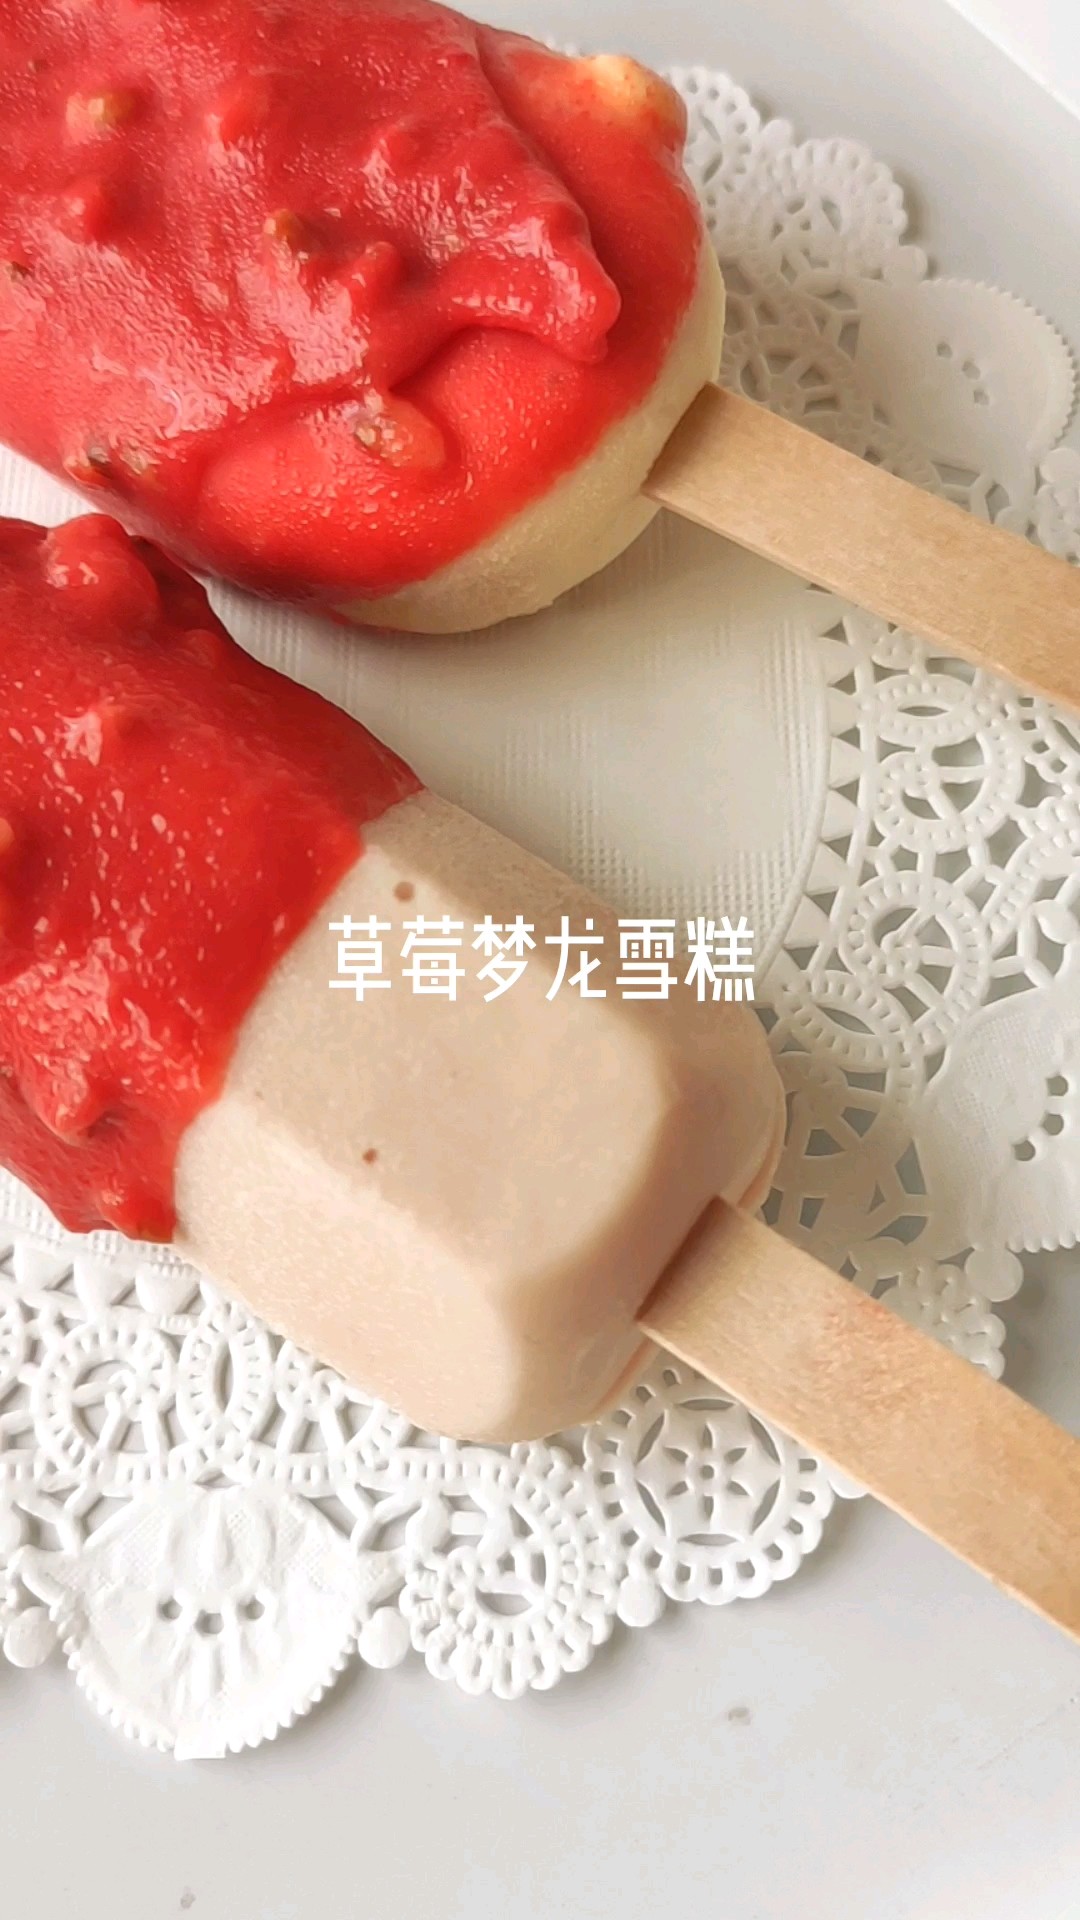 Strawberry Dream Dragon Ice Cream recipe